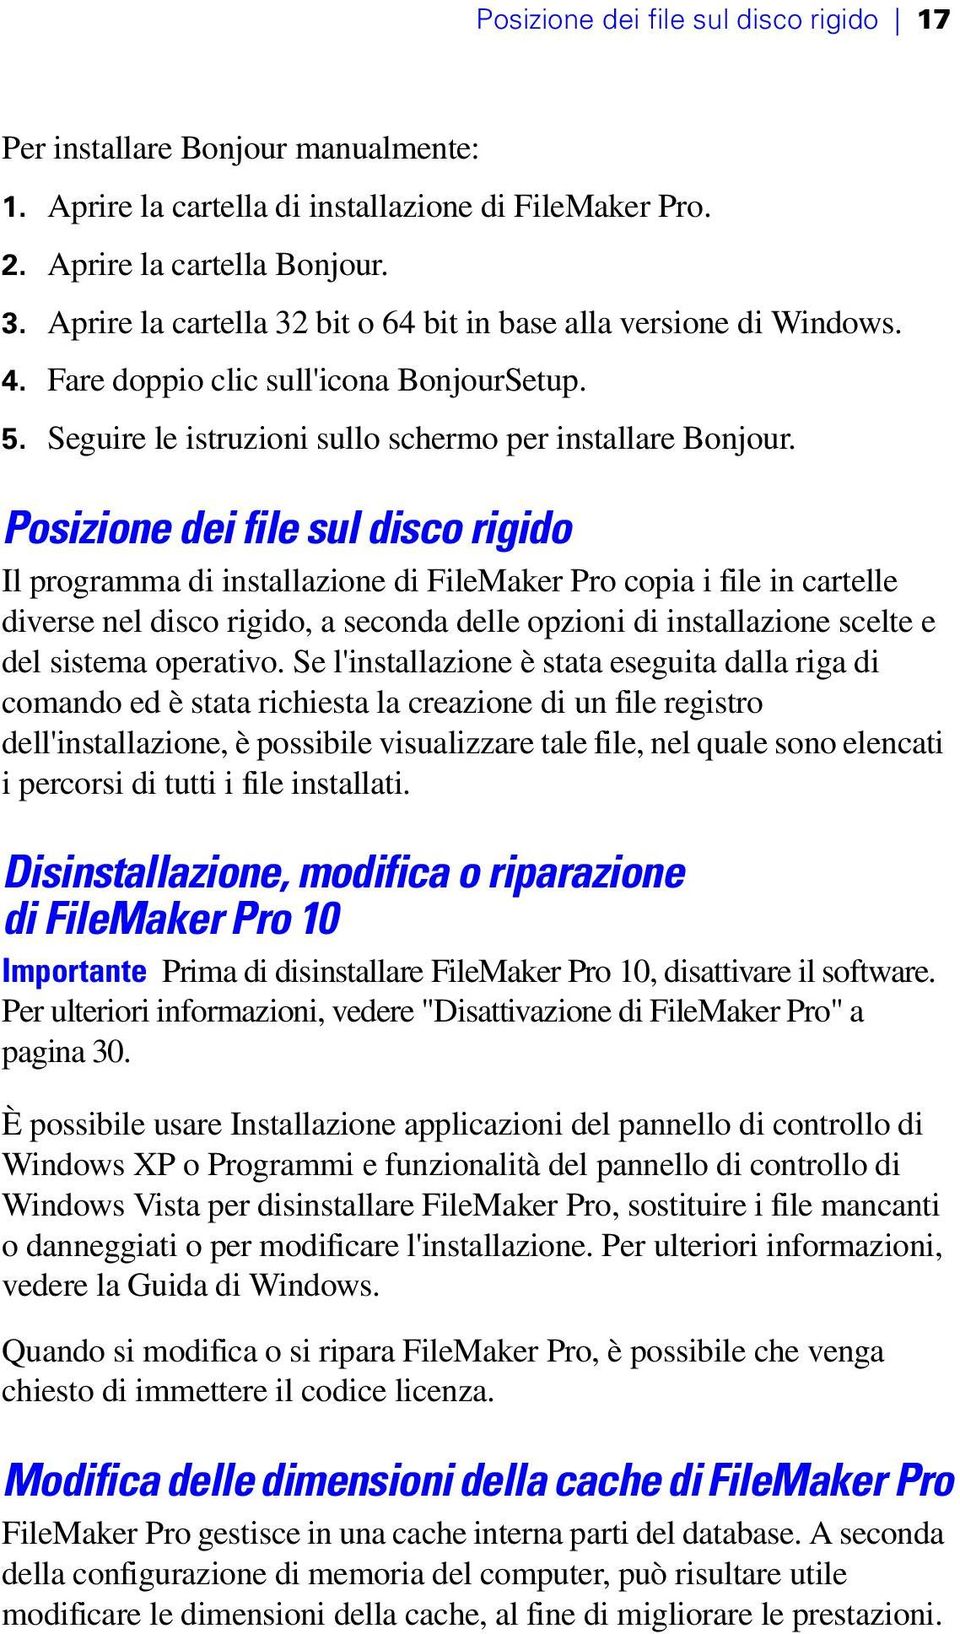 Posizione dei file sul disco rigido Il programma di installazione di FileMaker Pro copia i file in cartelle diverse nel disco rigido, a seconda delle opzioni di installazione scelte e del sistema